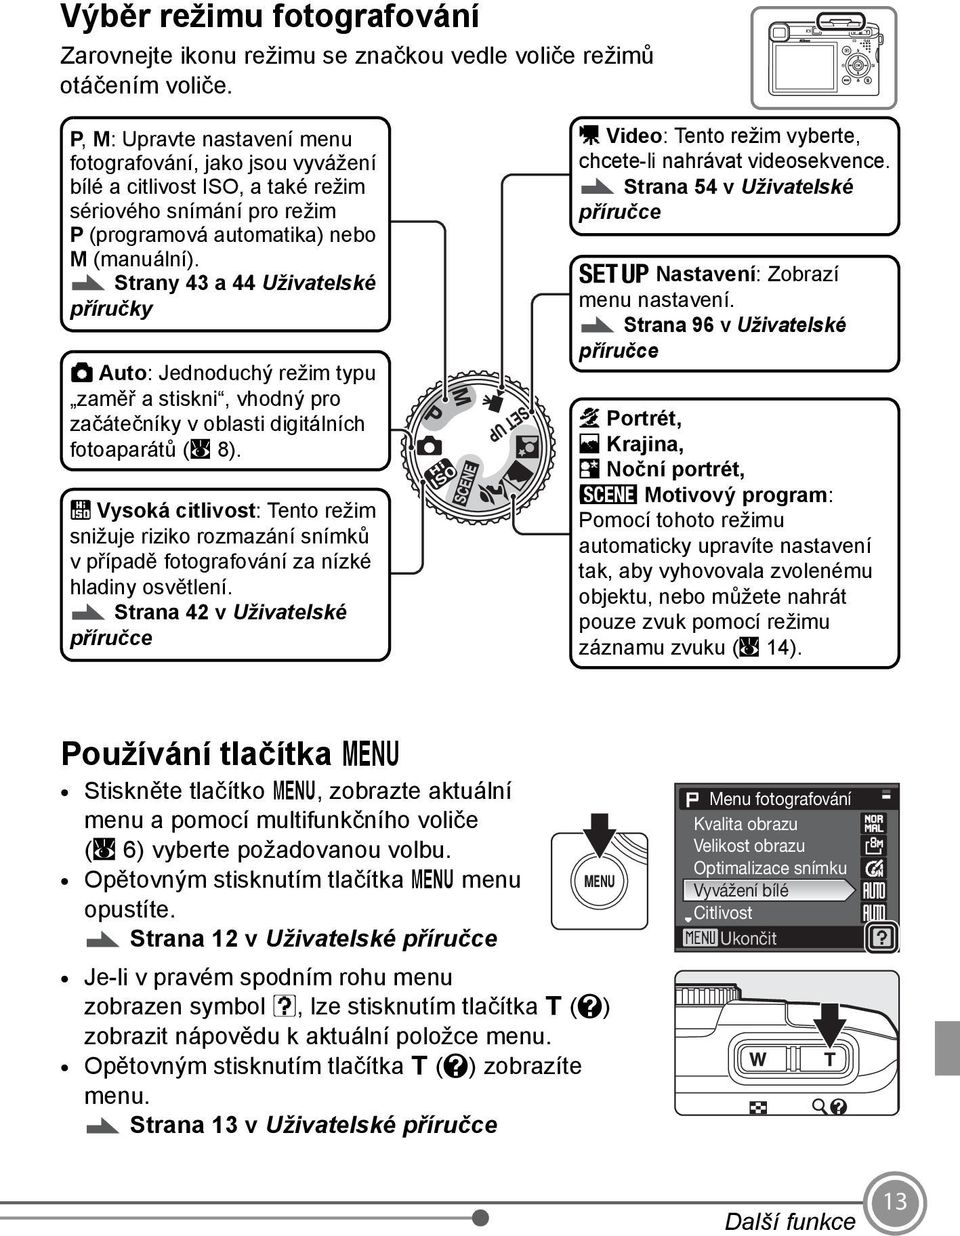 Strany 43 a 44 Uživatelské příručky A Auto: Jednoduchý režim typu zaměř a stiskni, vhodný pro začátečníky v oblasti digitálních fotoaparátů (A 8).